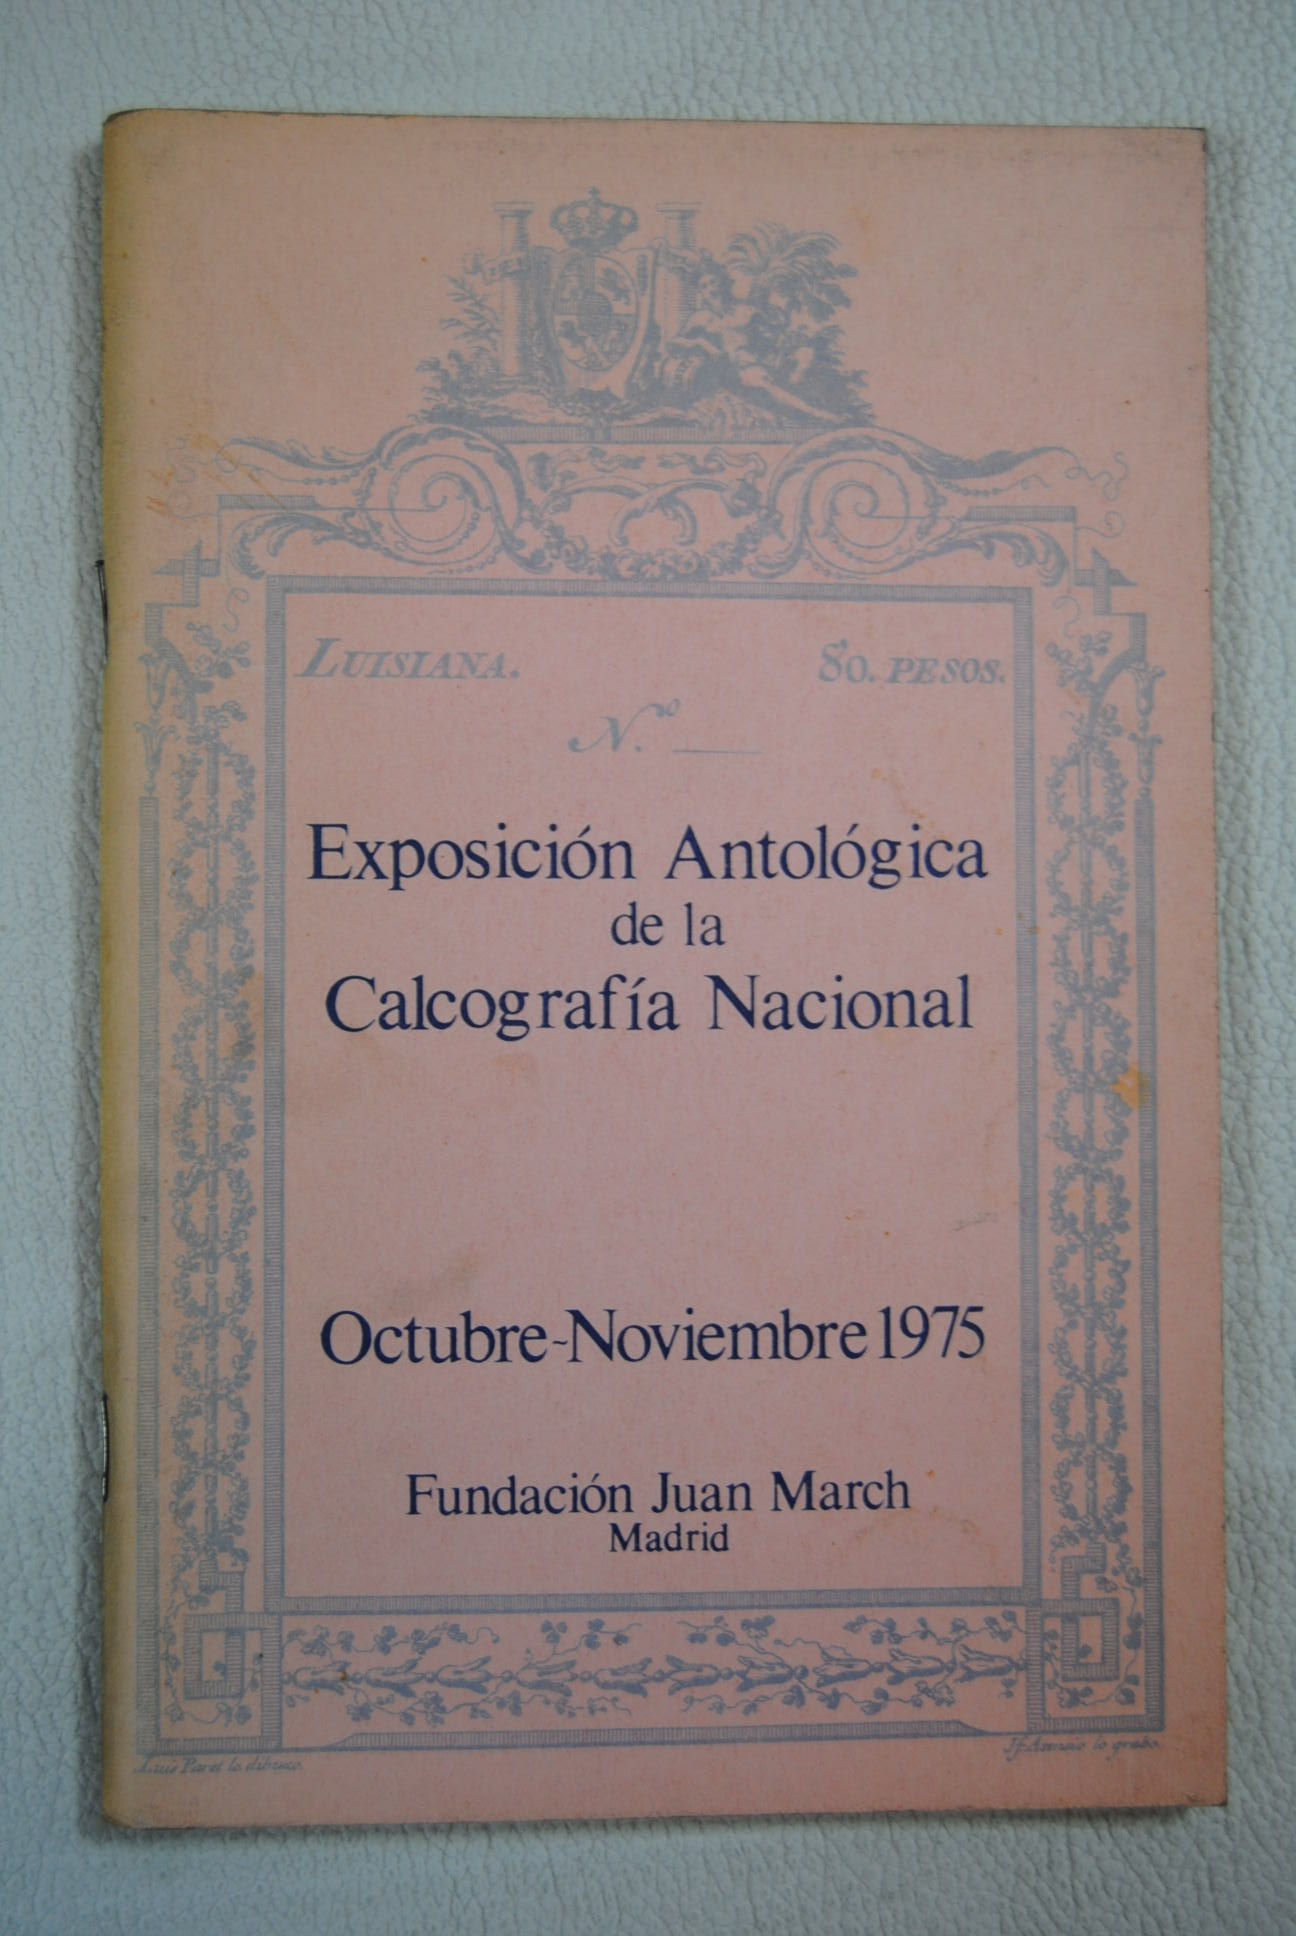 Exposicin antolgica de la Calcografa Nacional obras originales de Goya Fortuny Solana Baroja y otros grabados espaoles de los siglos XVIII XIX Fundacin Juan March octubre noviembre 1975